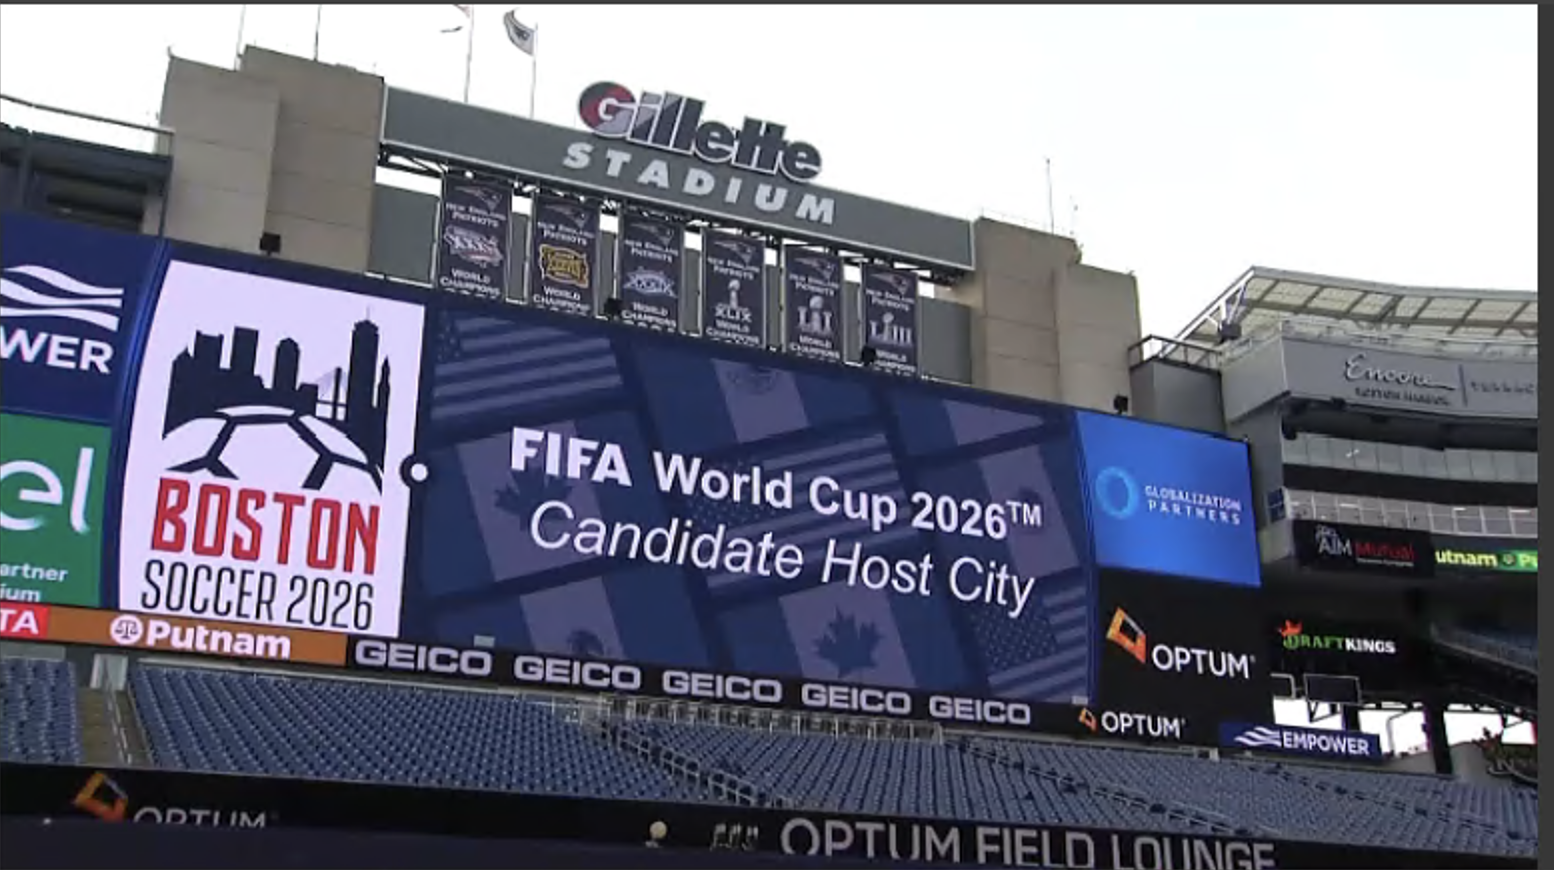 Estádio Gillette na Copa do Mundo 2026 em Boston